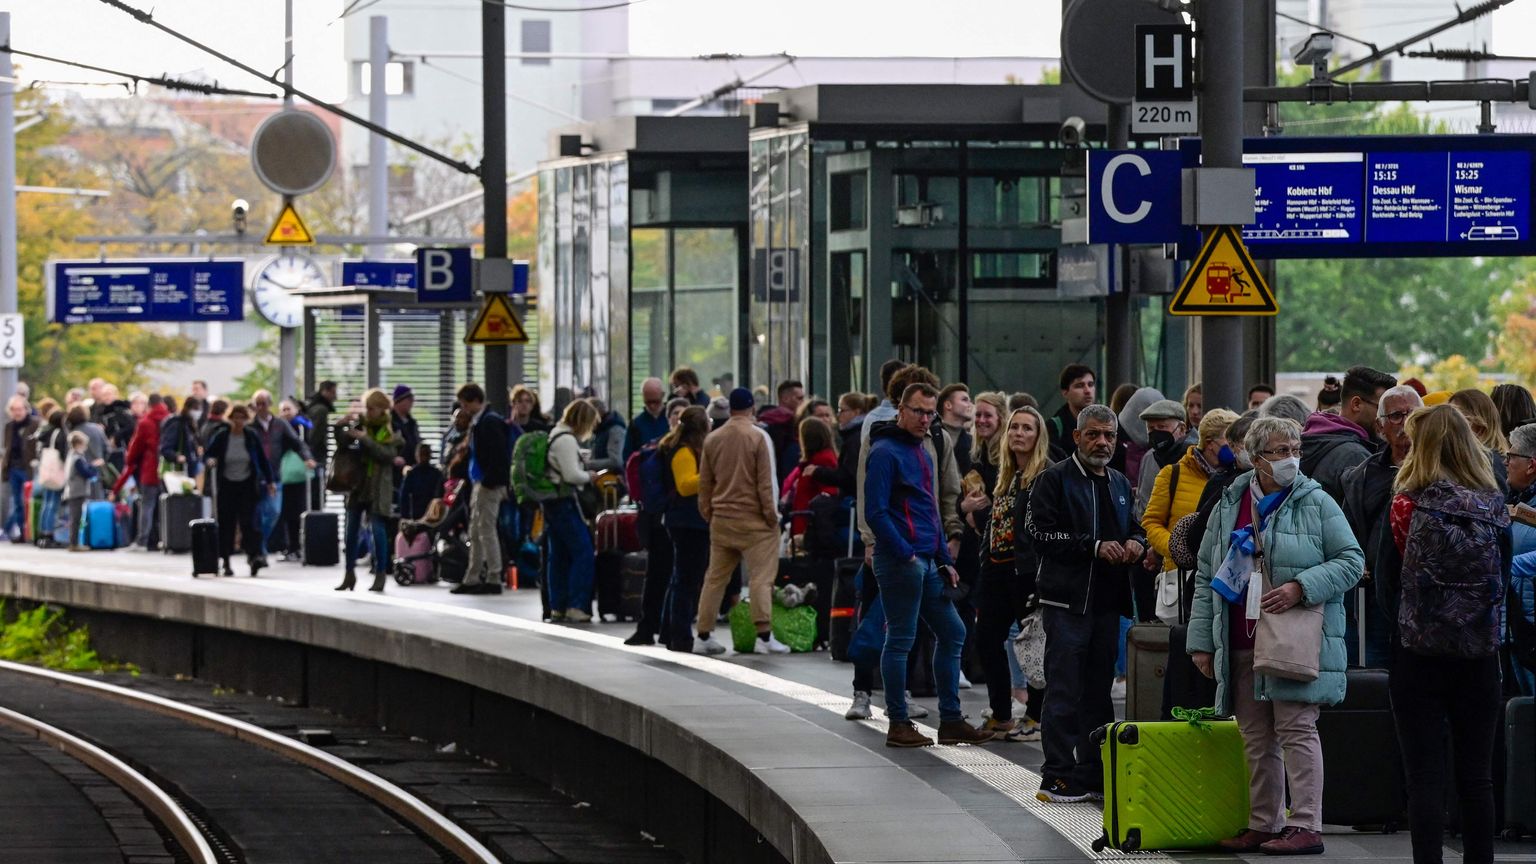 Reisijad ootamas perroonil Berliini raudteejaamas 8. oktoobril 2022 pärast suuri häireid Saksamaa raudteevõrgus, mille põhjuseks oli sideinfrastruktuuri vastu suunatud sabotaaž.